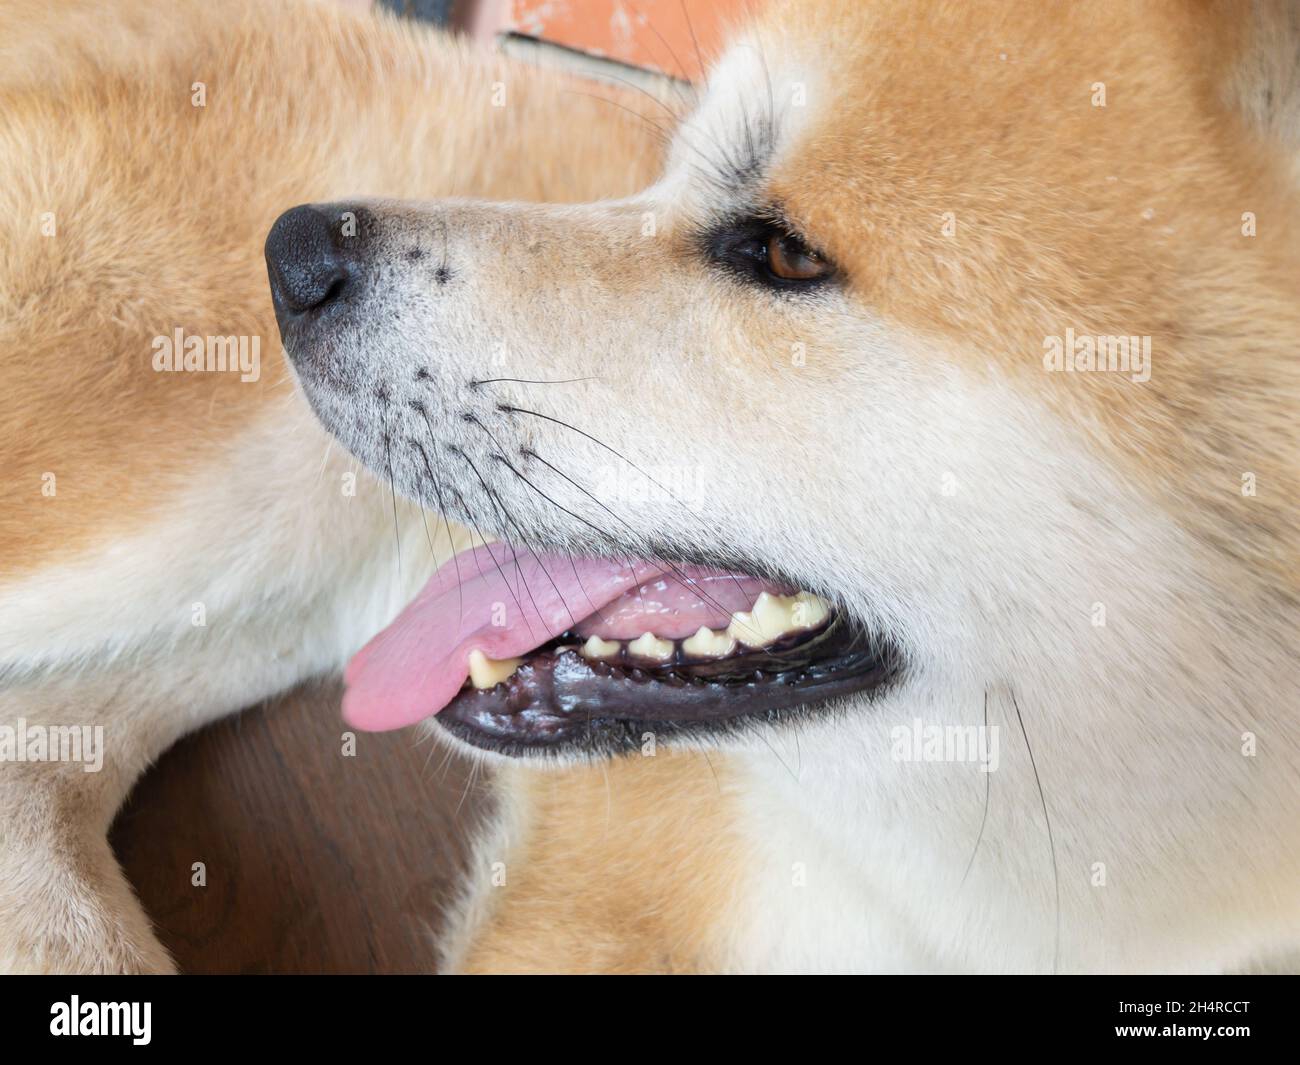 Nahaufnahme des lächelnden jungen Akita-Inu-Hundes, der auf einem gefliesten Boden liegt Stockfoto